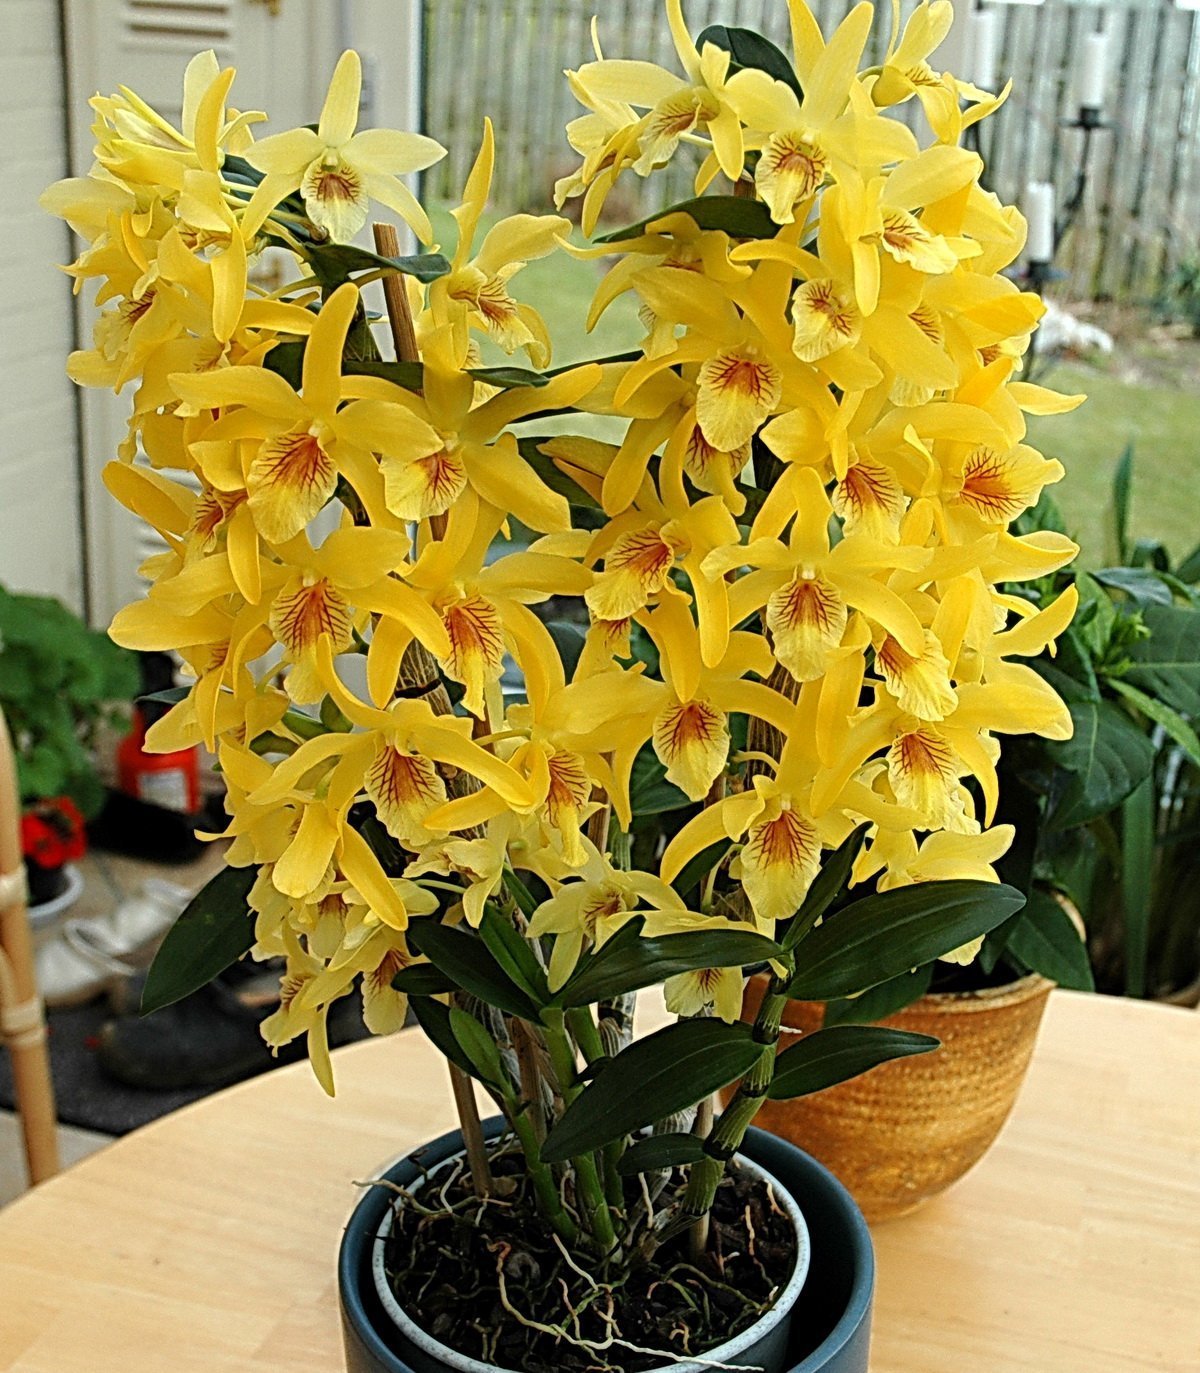 Дендробиум нобиле купить. Орхидея Дендробиум Нобиле. Орхидея Dendrobium Nobile. Орхидея дегдробиум набухла. Цветок Dendrobium Nobile.